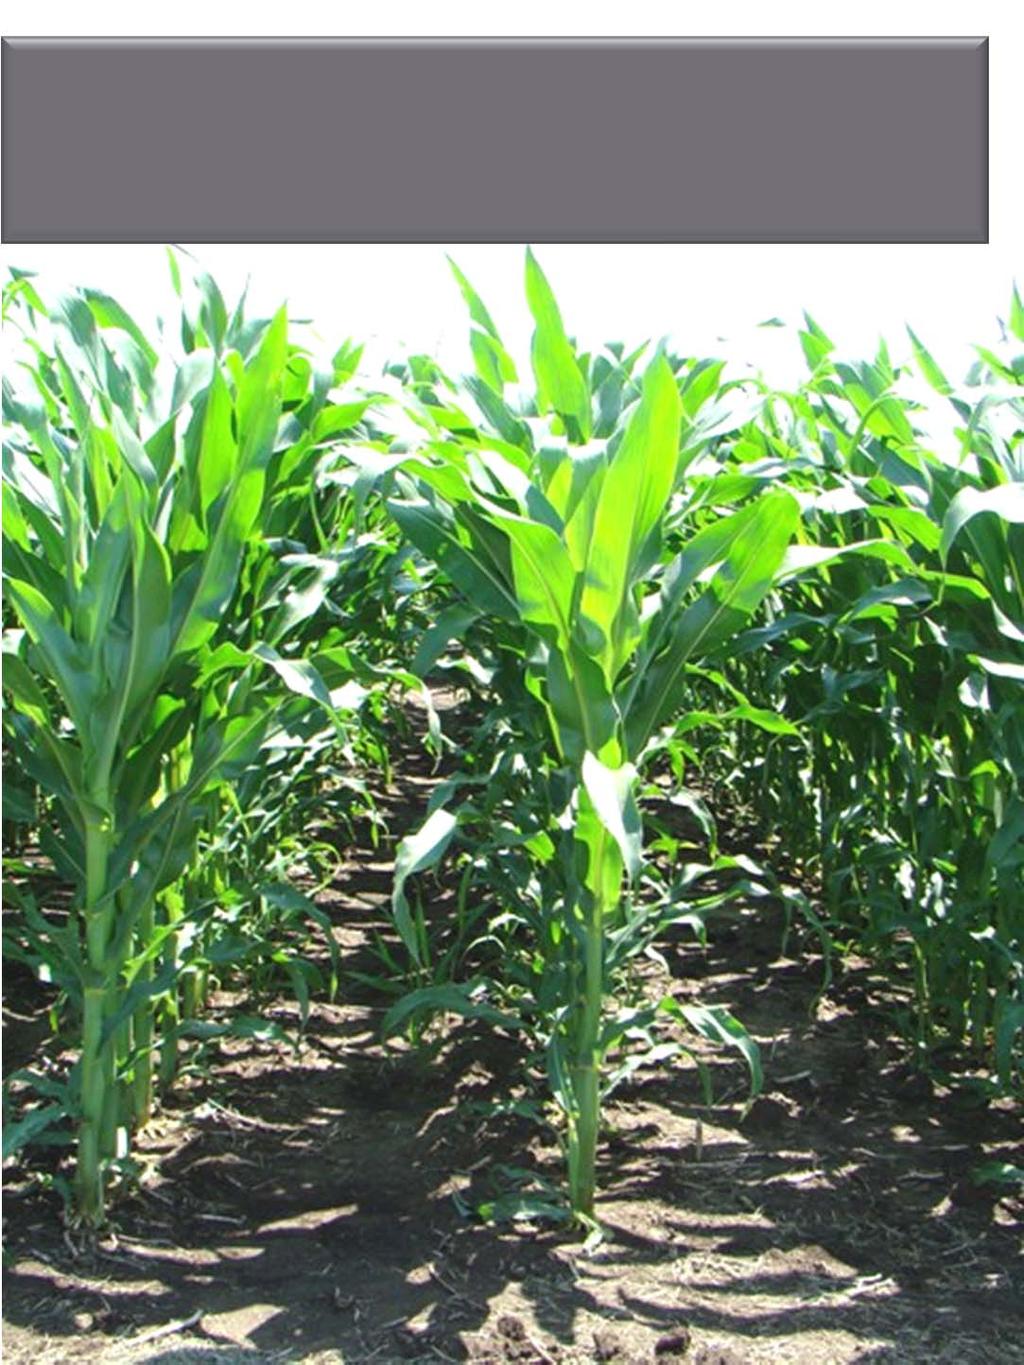 PRE: Zemax 2.4 qts./a + Princep herbicide 1.0 lb./a PRE: Lumax 3.0 qts.